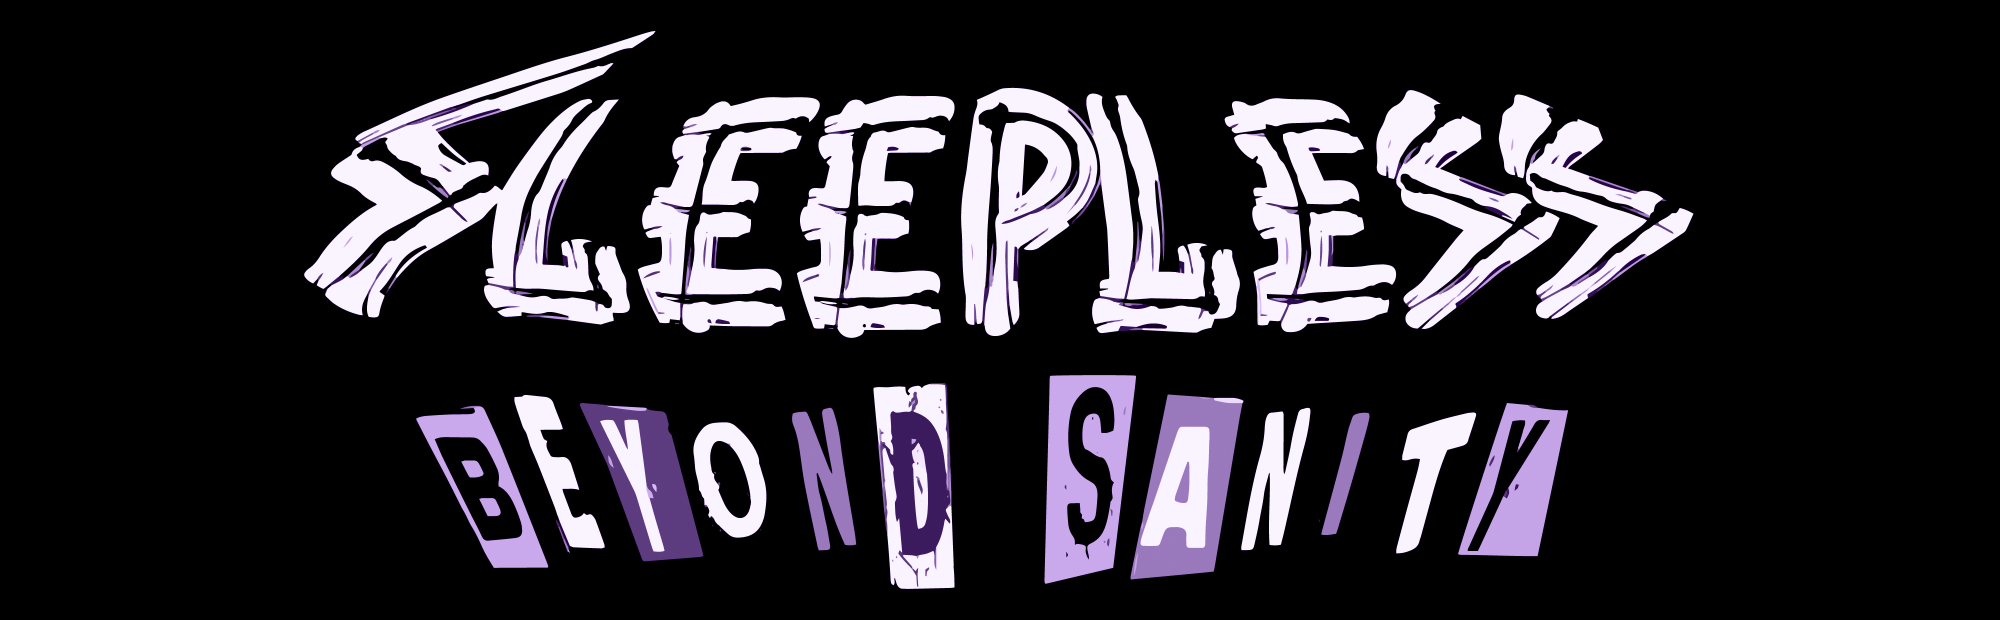 Sleepless RPG: Beyond sanity